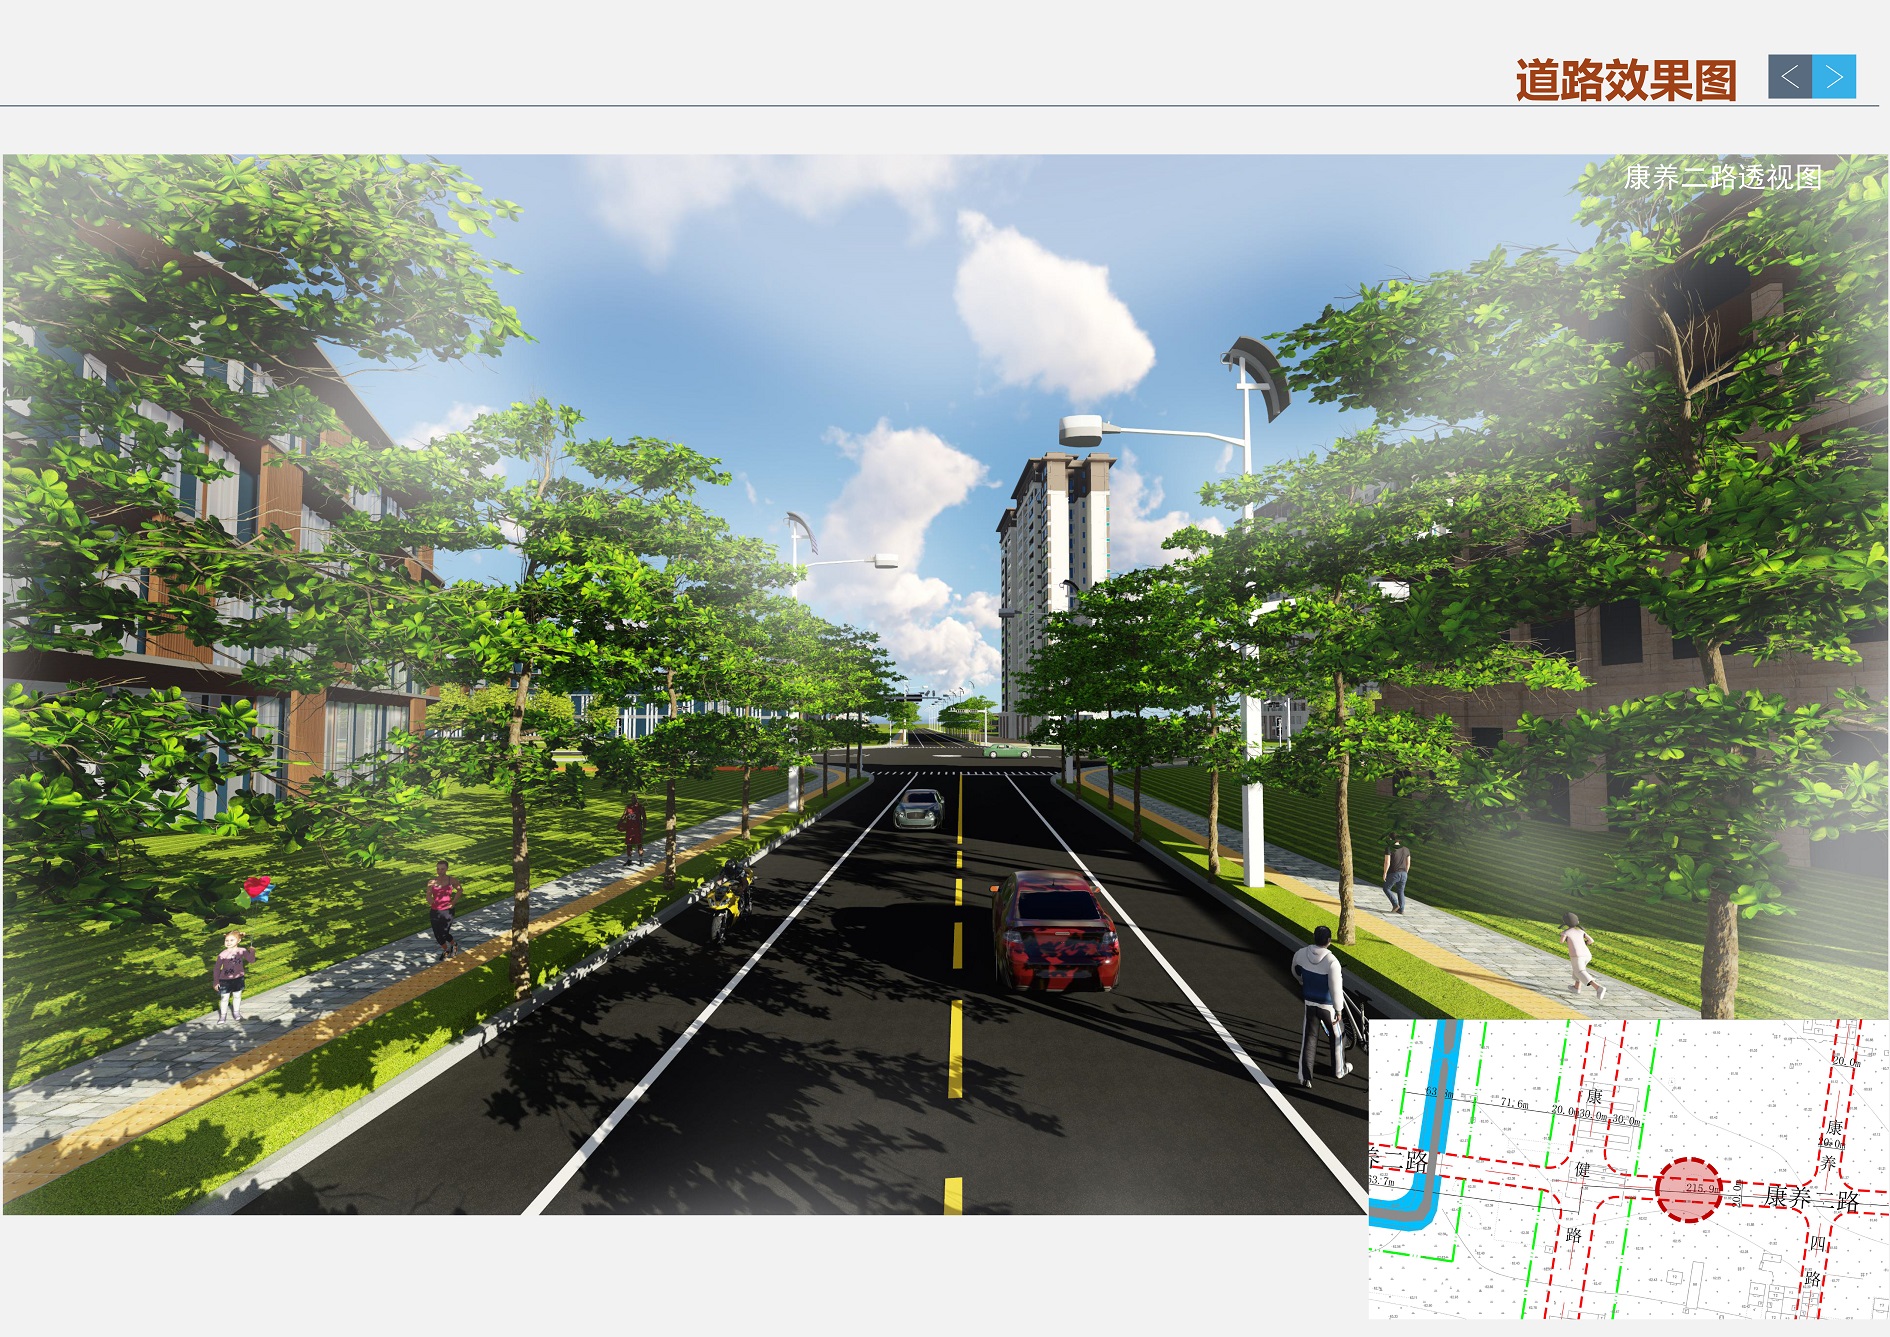 鄢陵县城乡规划事务中心2021年11月24日